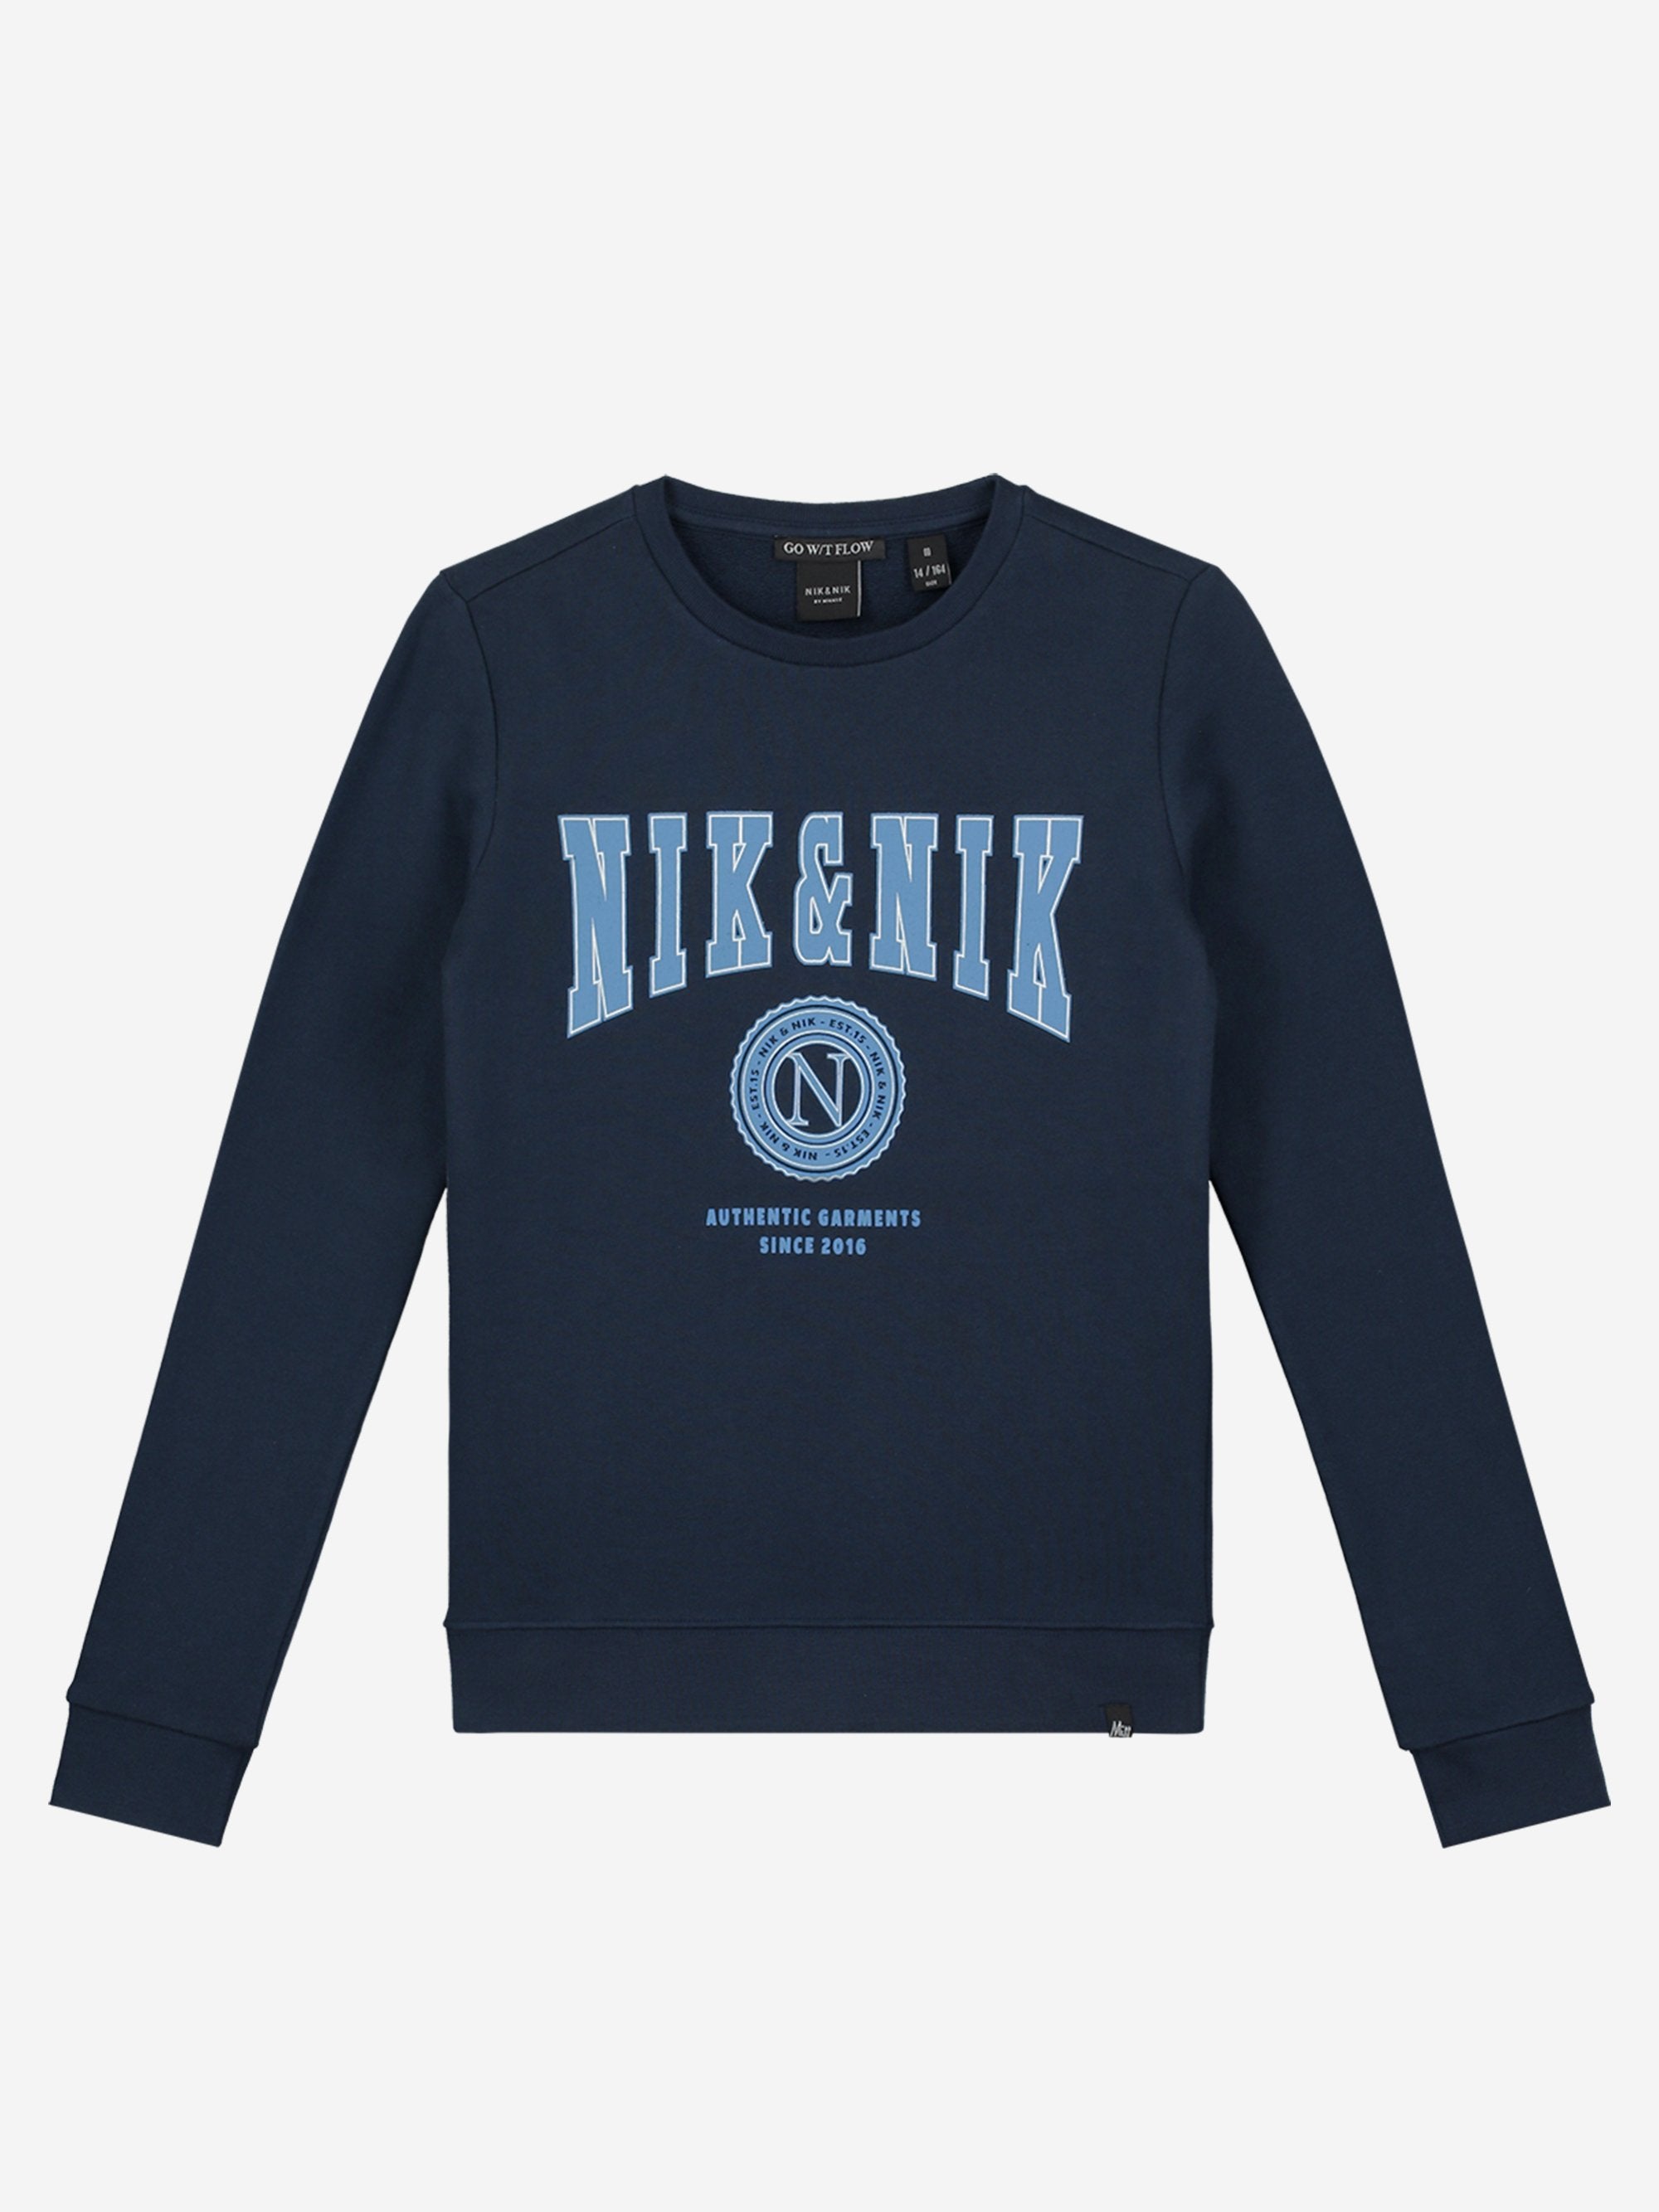 Meisjes Ginny Sweater van Nik & Nik in de kleur Royal Blue in maat 176.